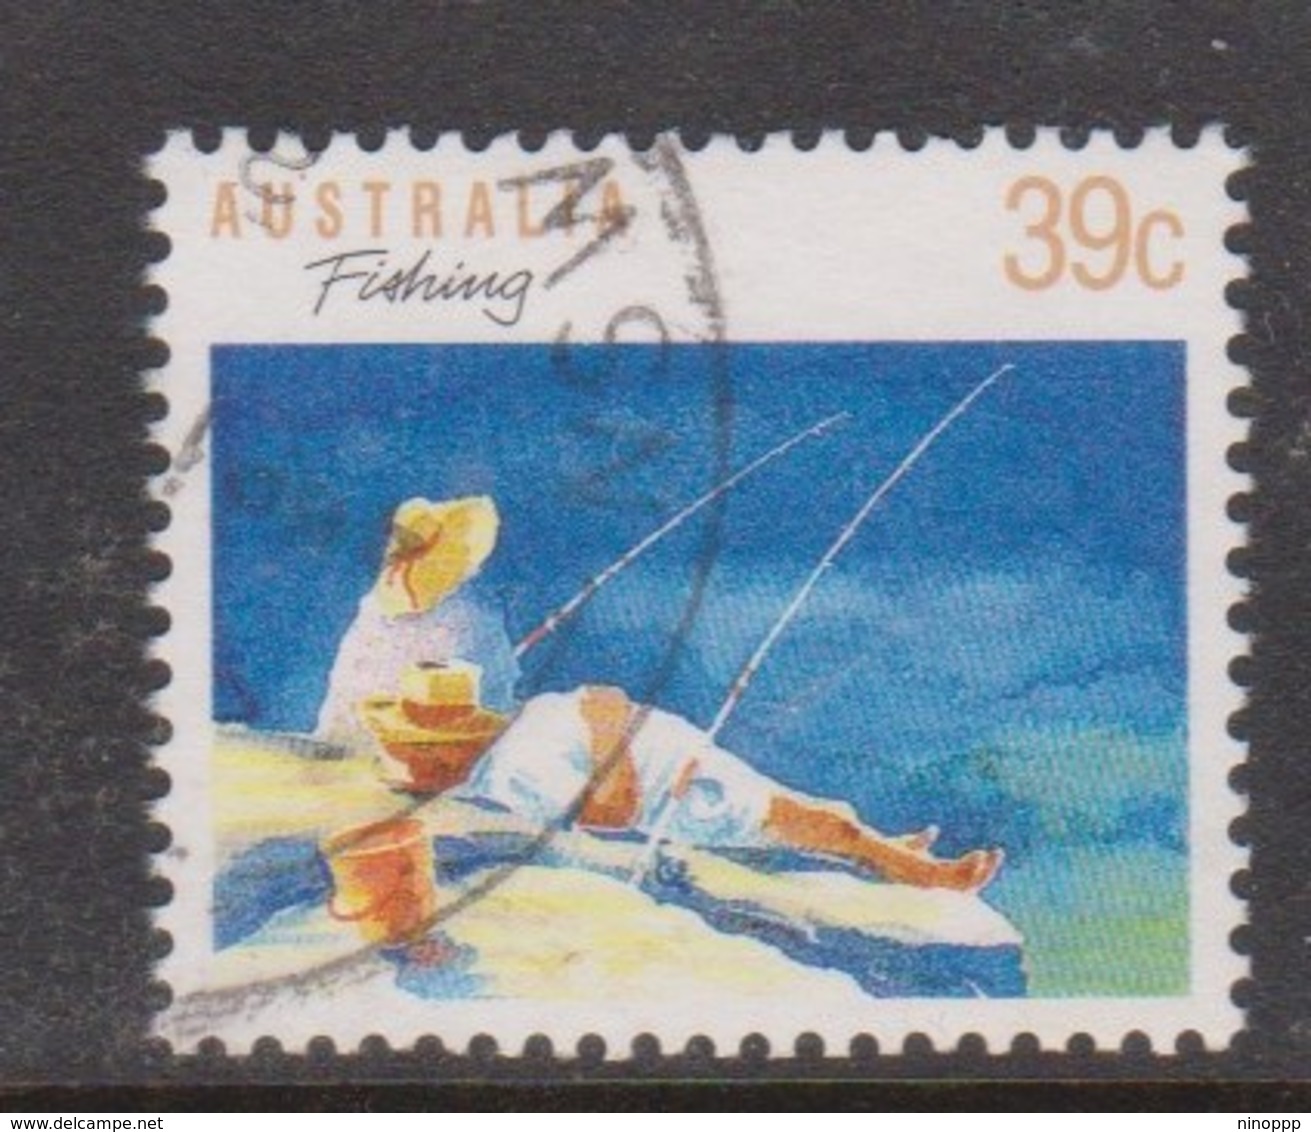 Australia ASC 1185 1989 Sports 39c Fishing Perf 13 X 13.5, Used - Ensayos & Reimpresiones